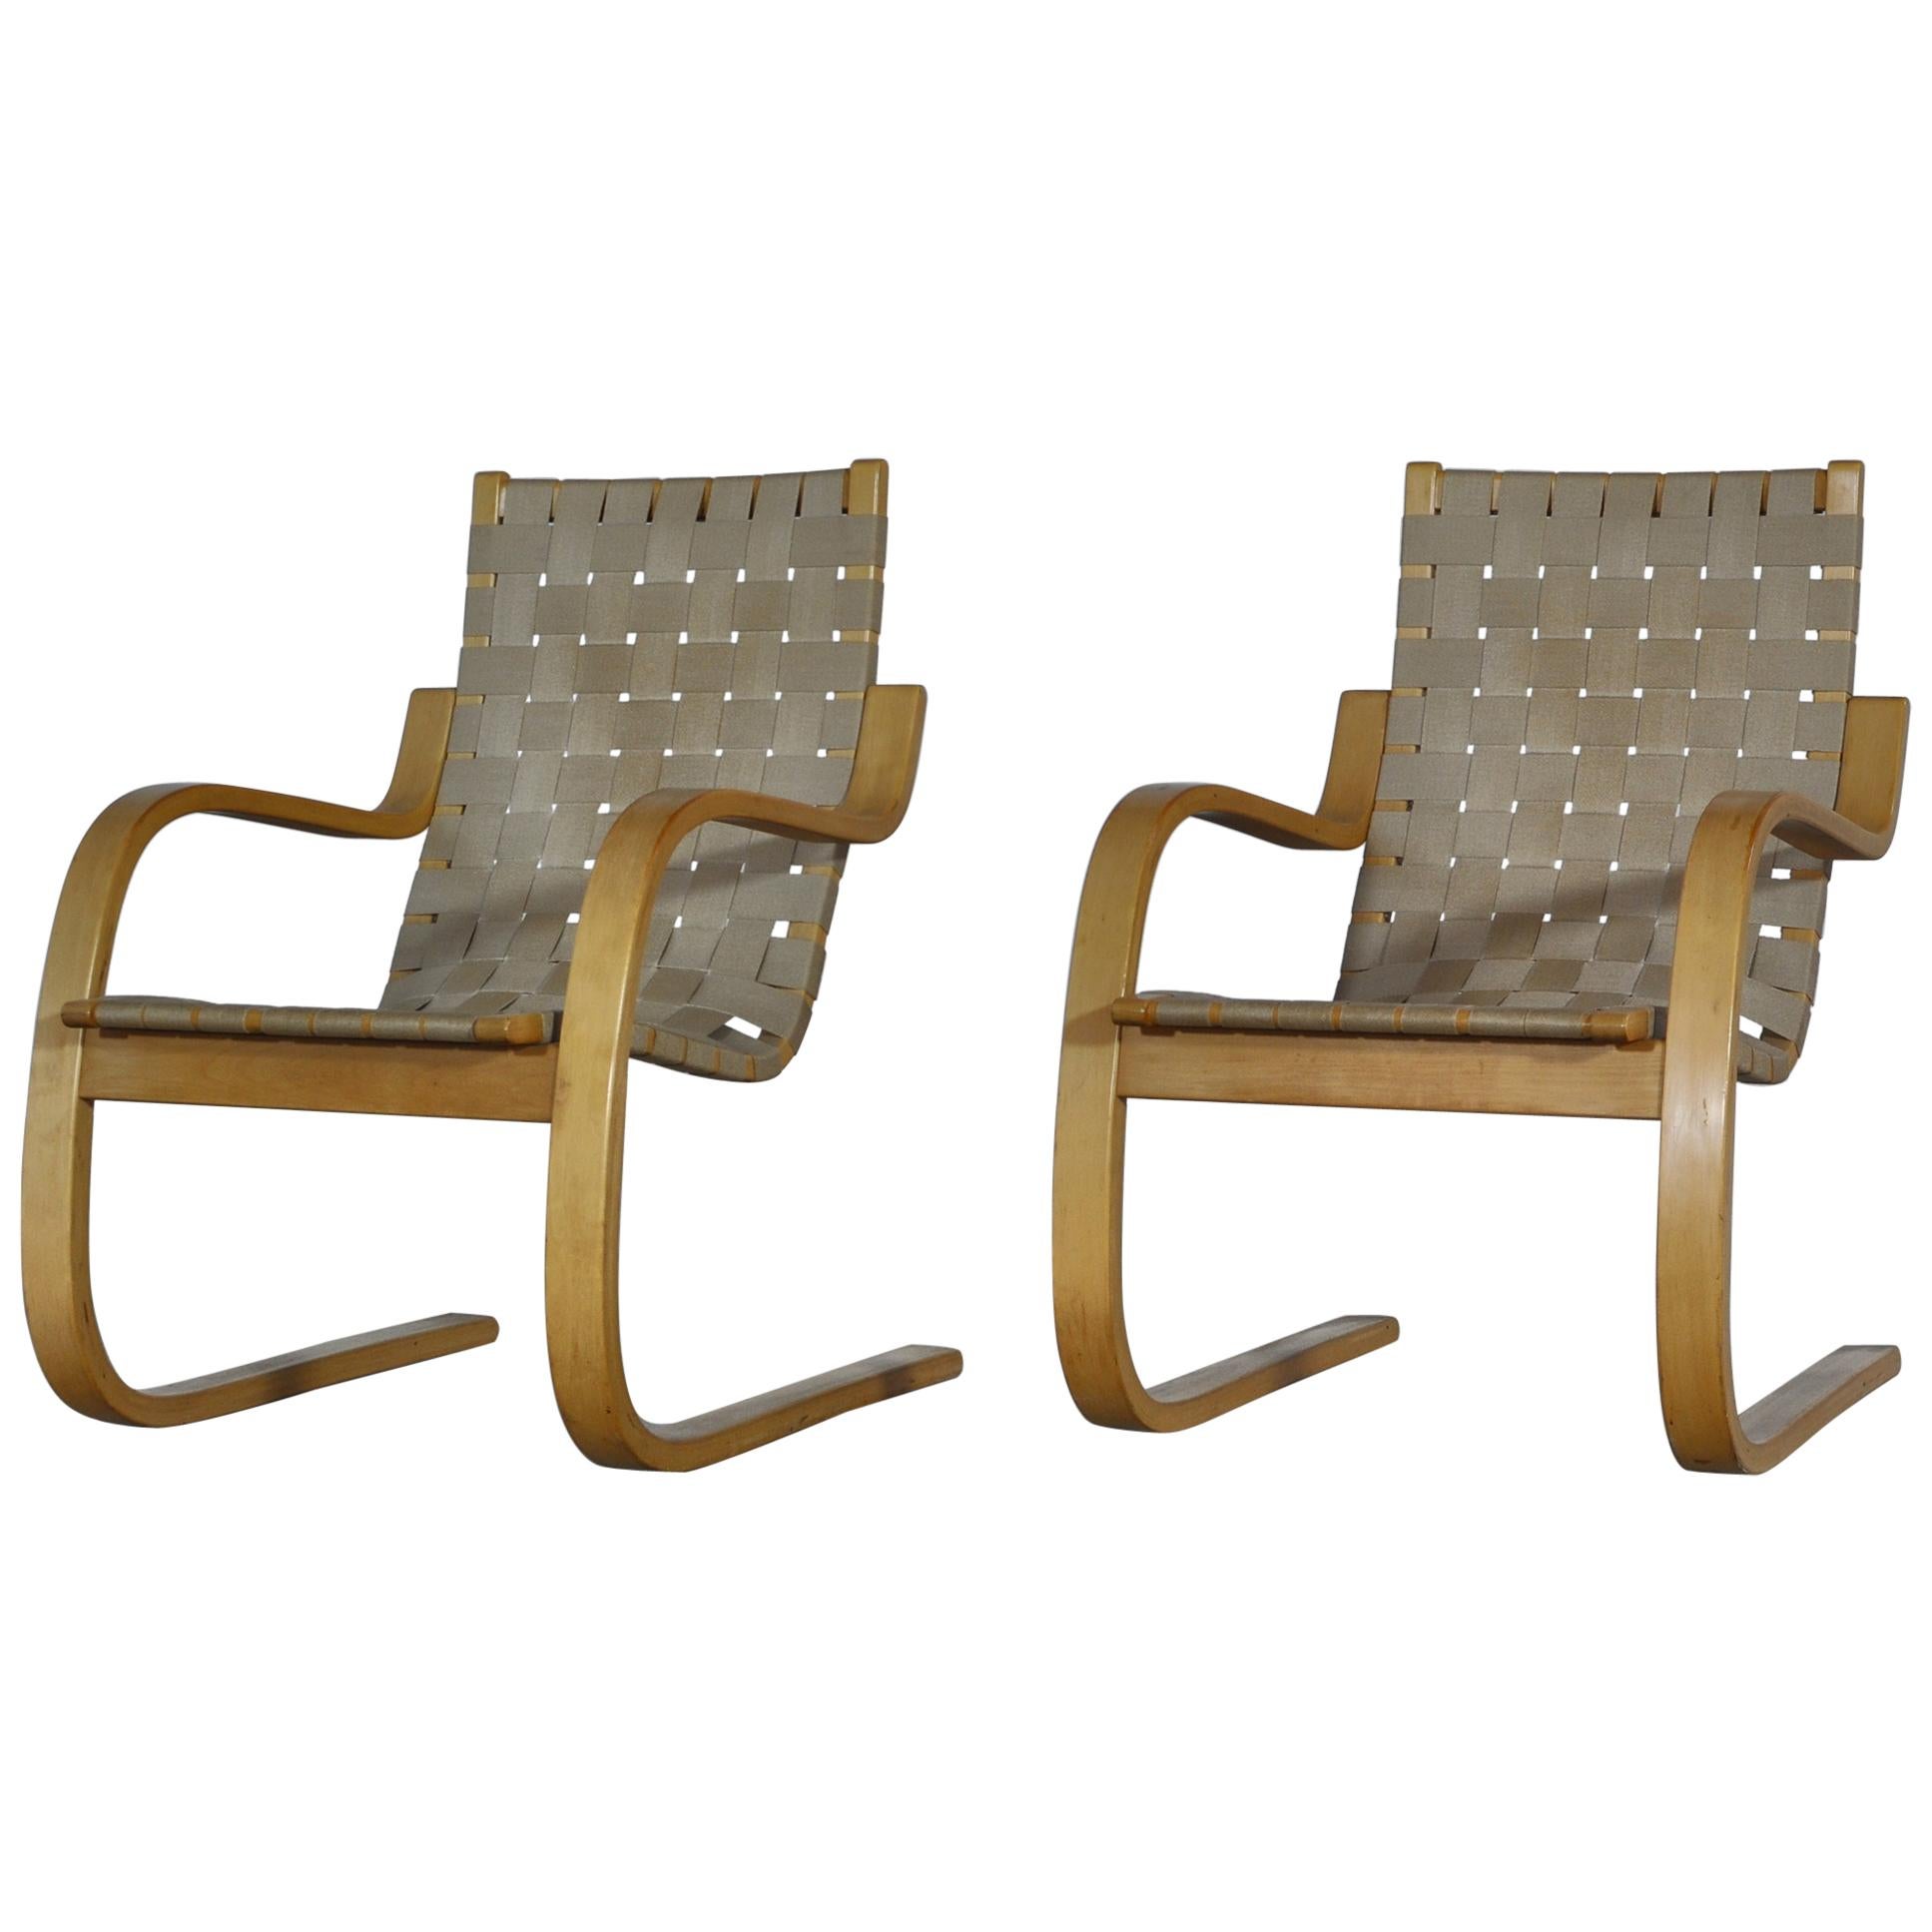 Alvar Aalto Scandinavian Modern Lounge Chairs Model 406 in Birch by Artek, 1960s